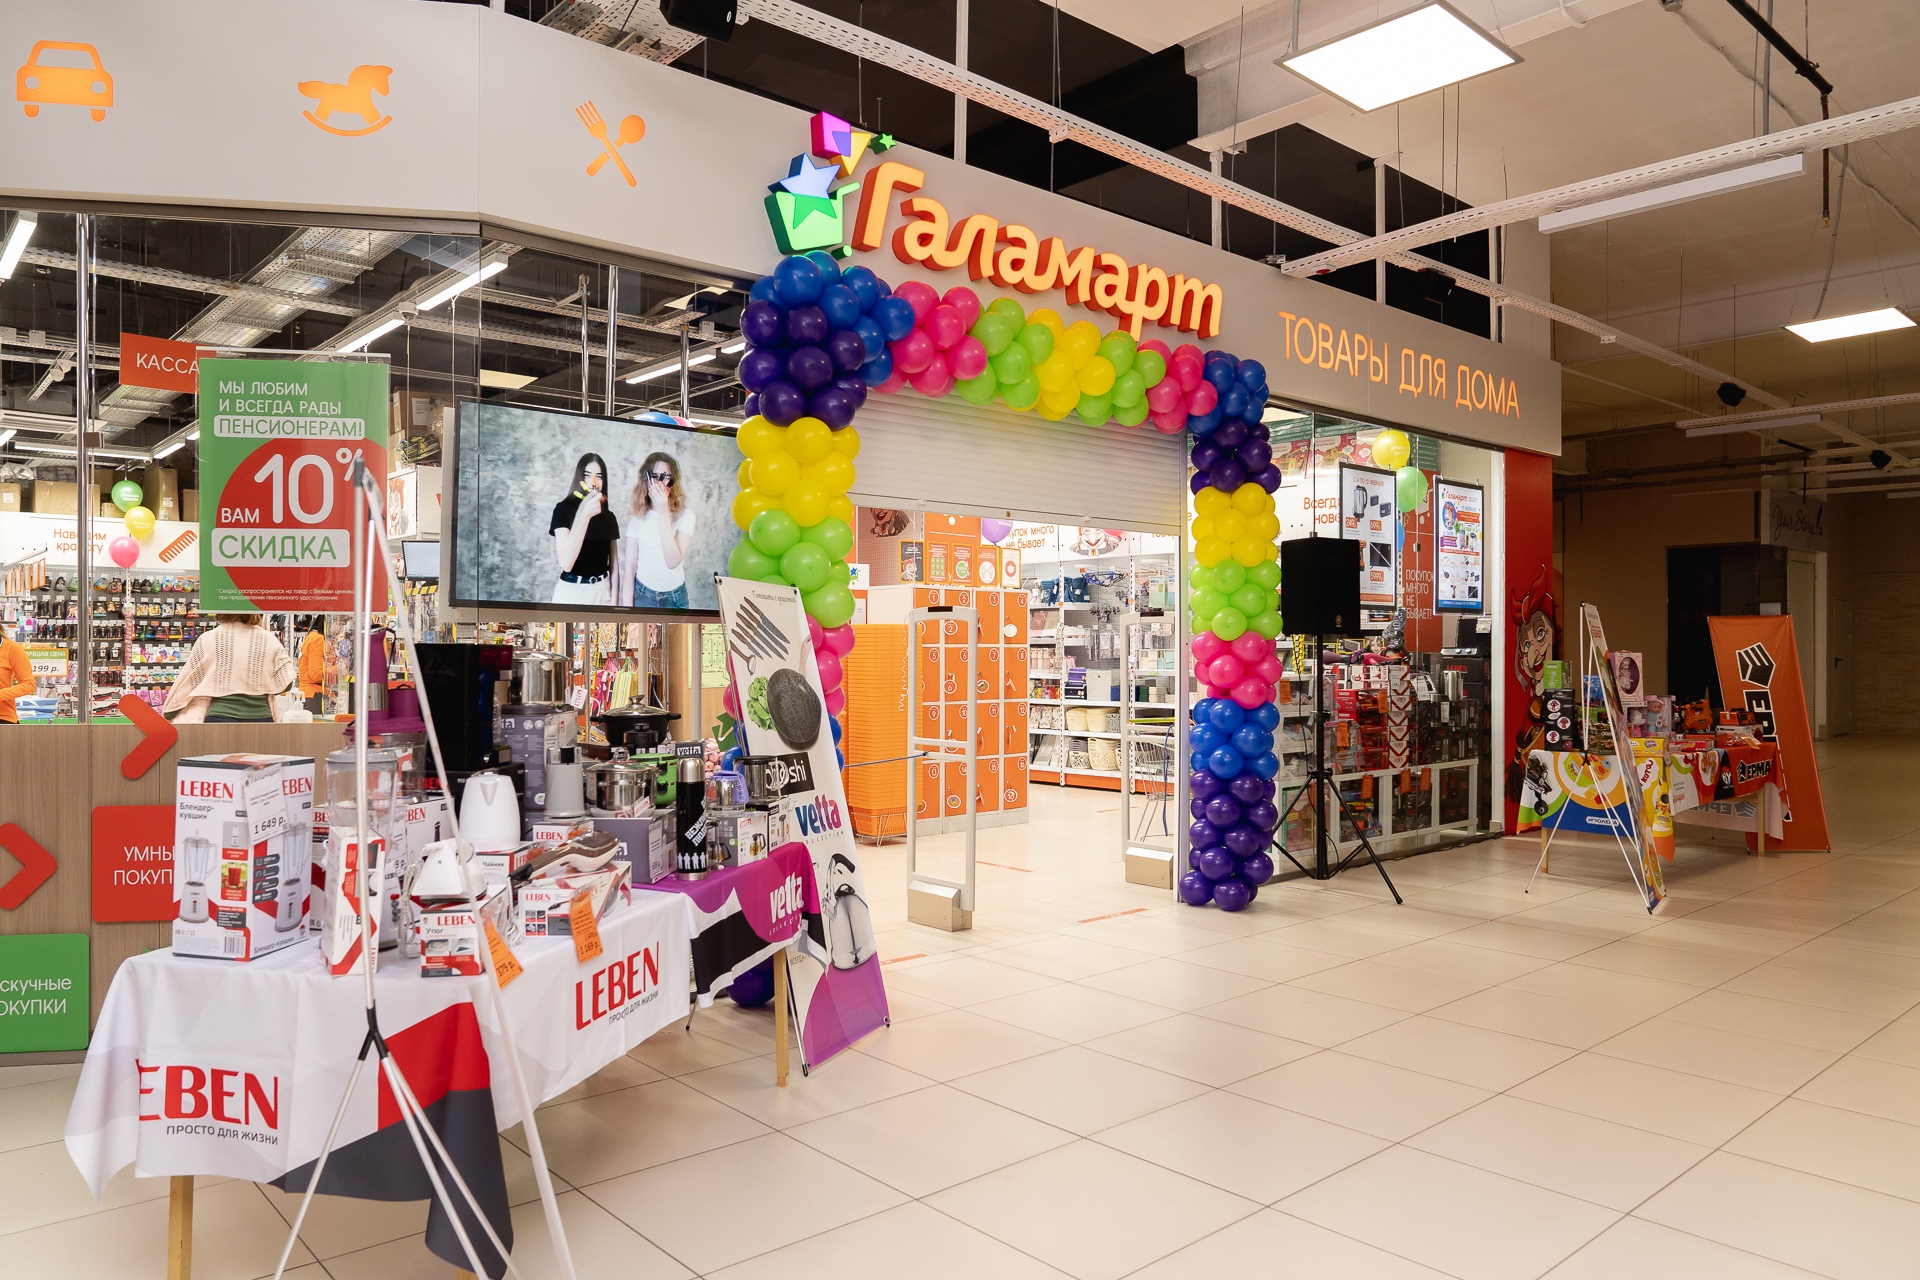 Народный магазин «Галамарт» открылся в Казани 21 июля